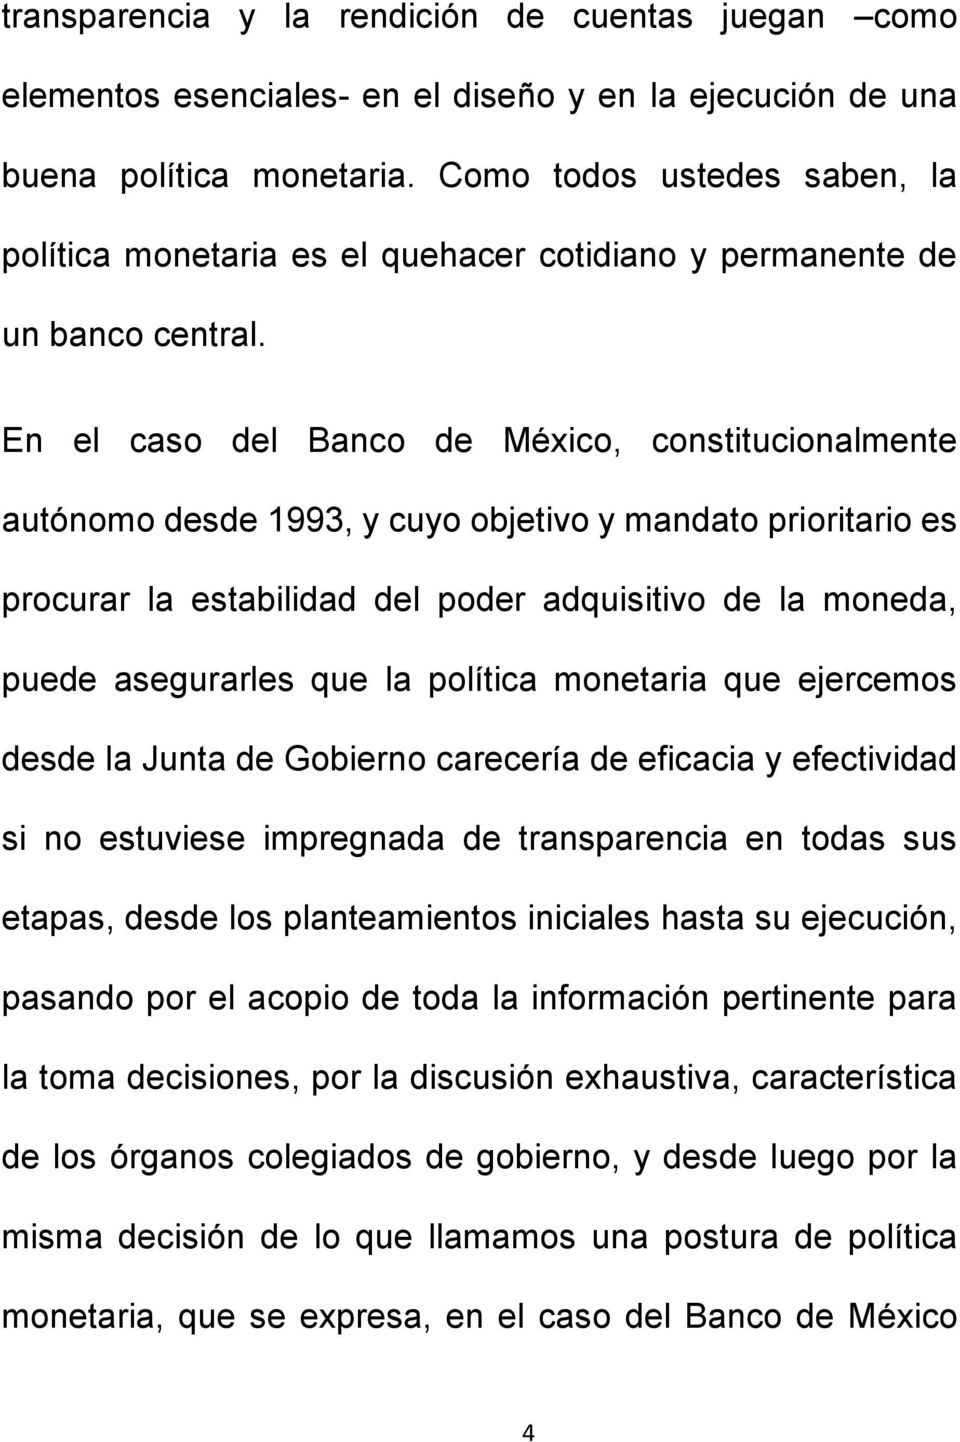 En el caso del Banco de México, constitucionalmente autónomo desde 1993, y cuyo objetivo y mandato prioritario es procurar la estabilidad del poder adquisitivo de la moneda, puede asegurarles que la